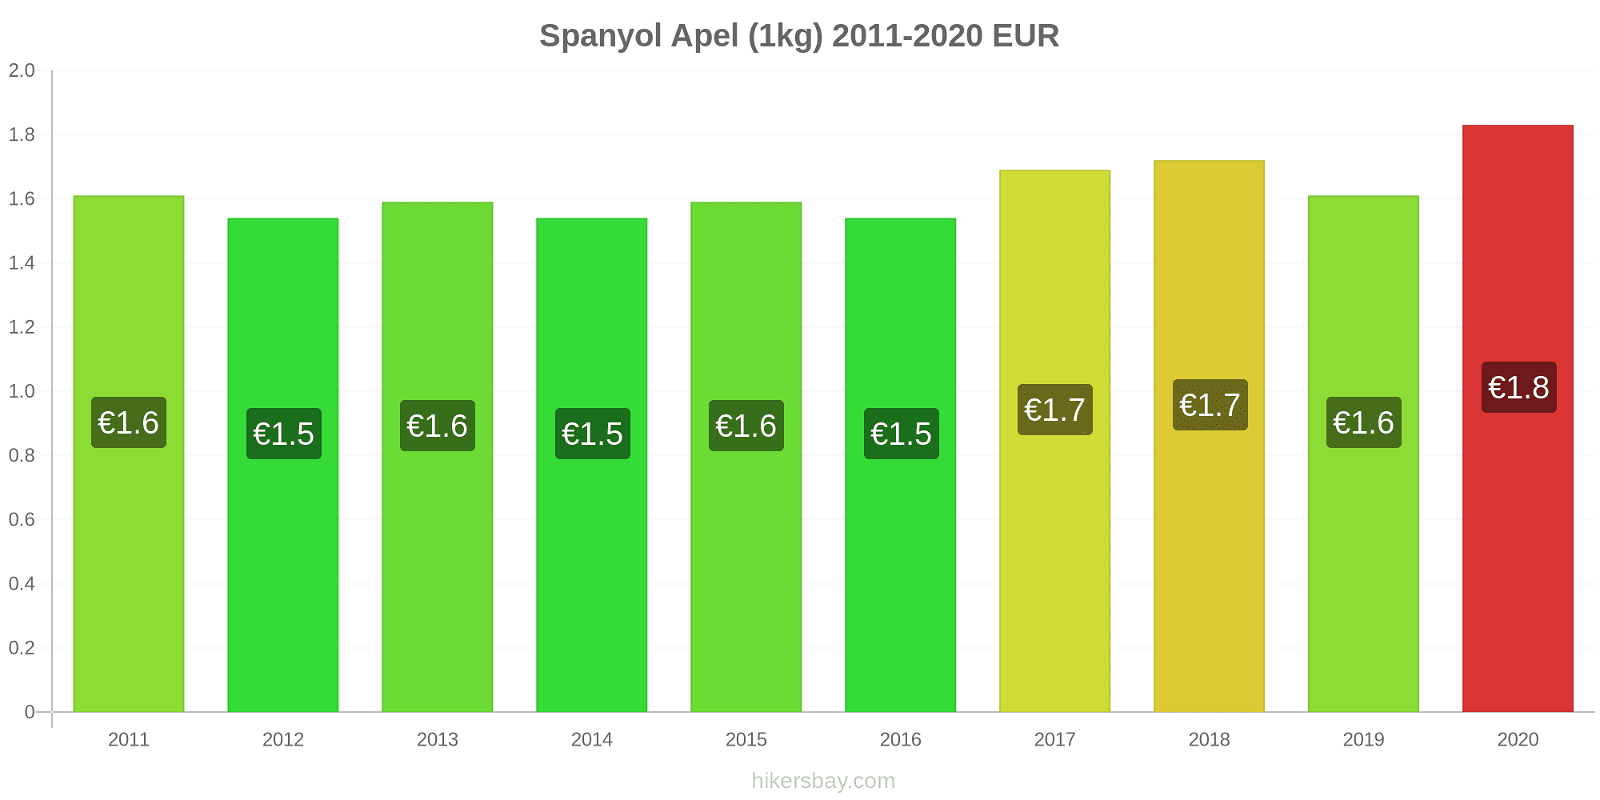 Spanyol perubahan harga Apel (1kg) hikersbay.com